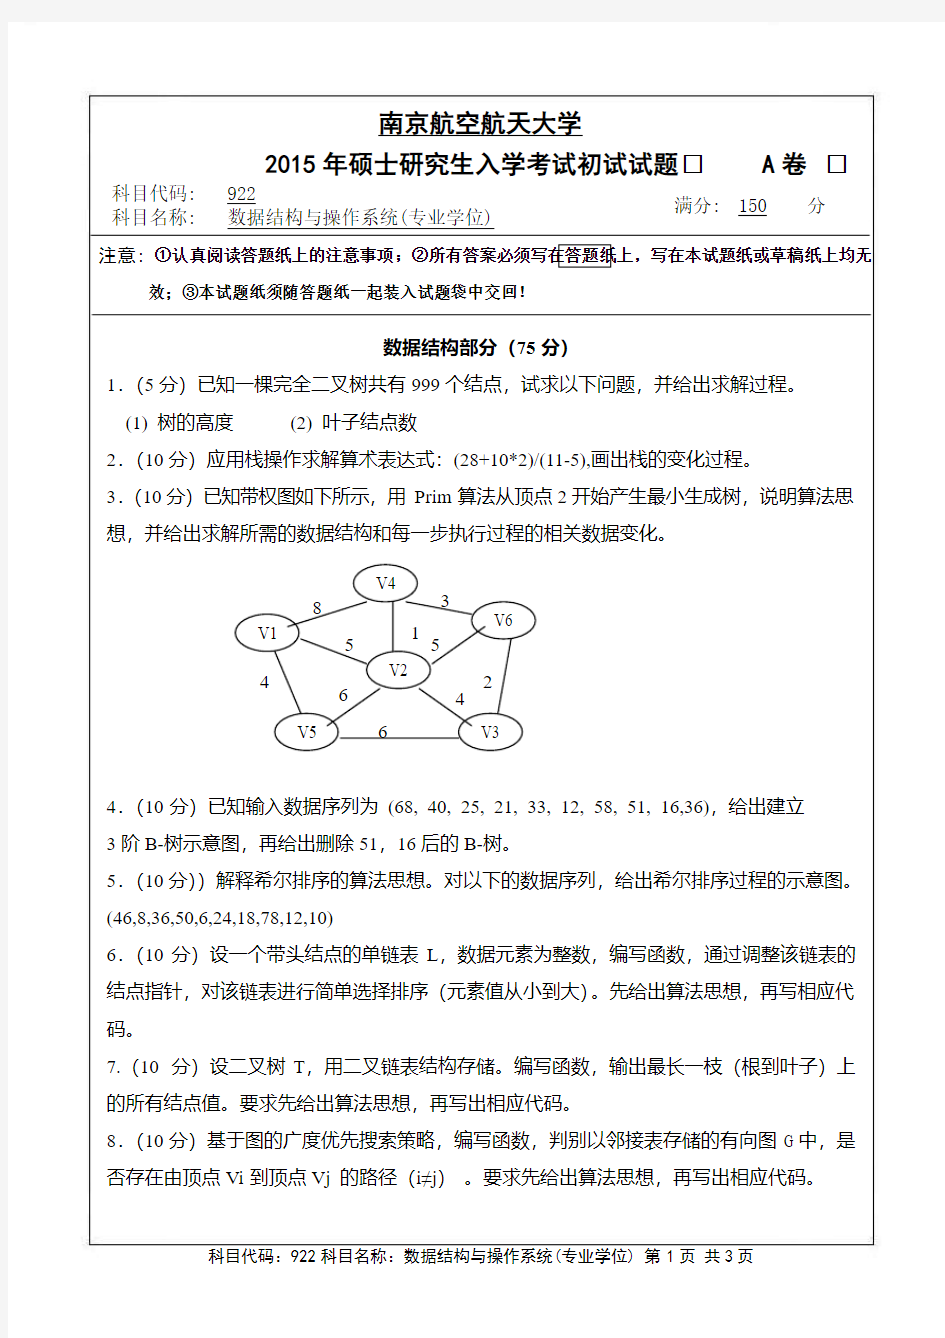 南京航空航天大学922数据结构与操作系统(专业学位)(A卷)2015年考研真题